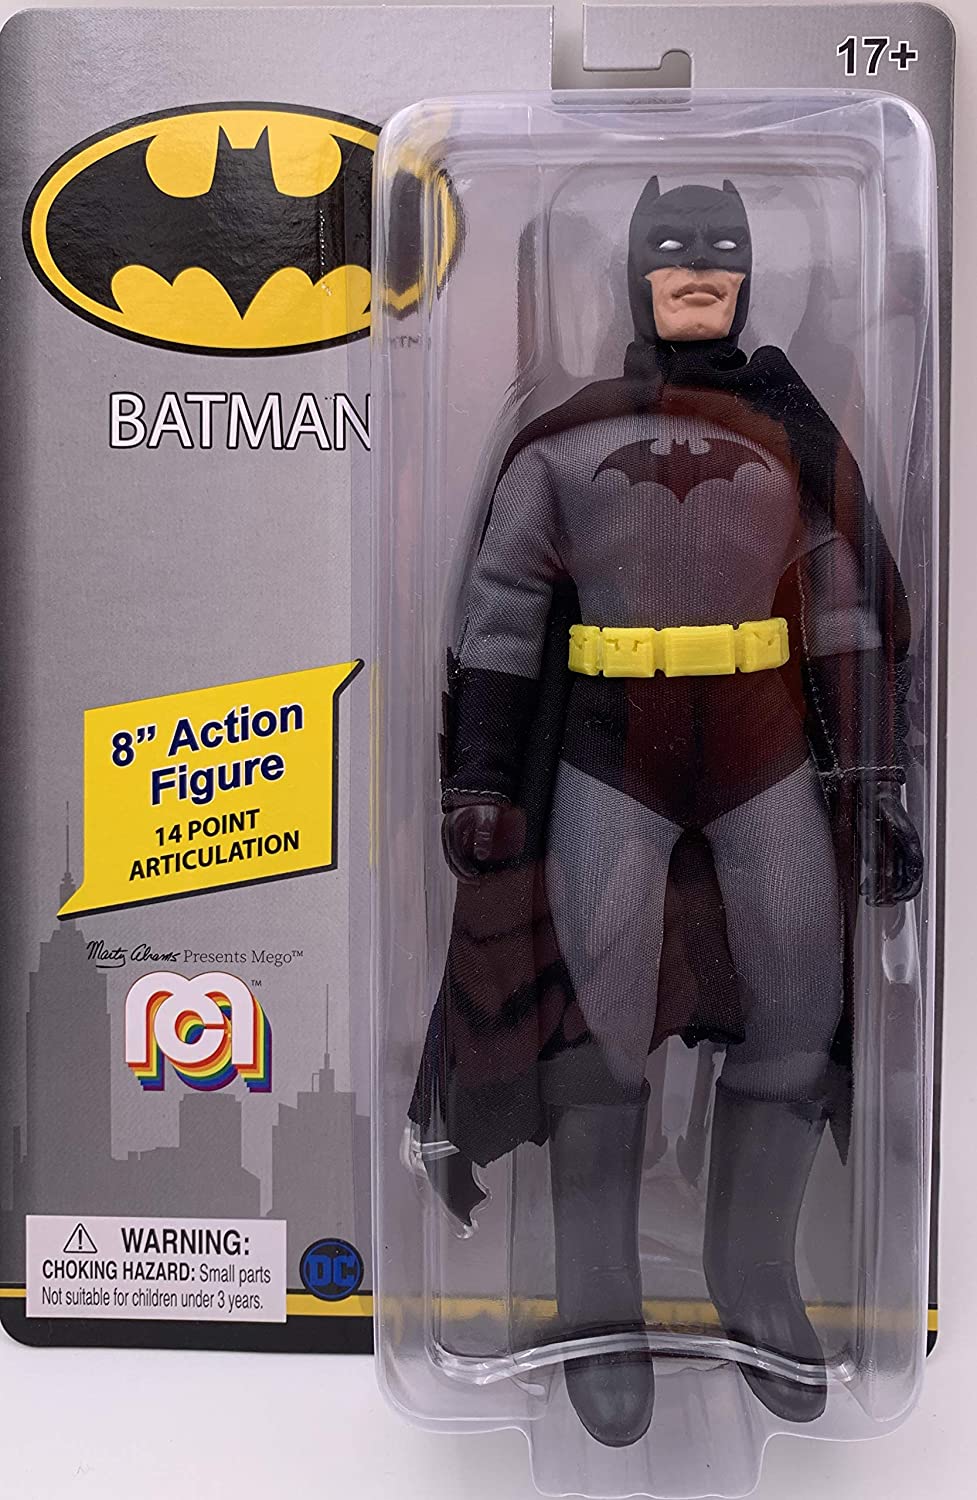 Mego Action Figure Batman Oficial Licenciado